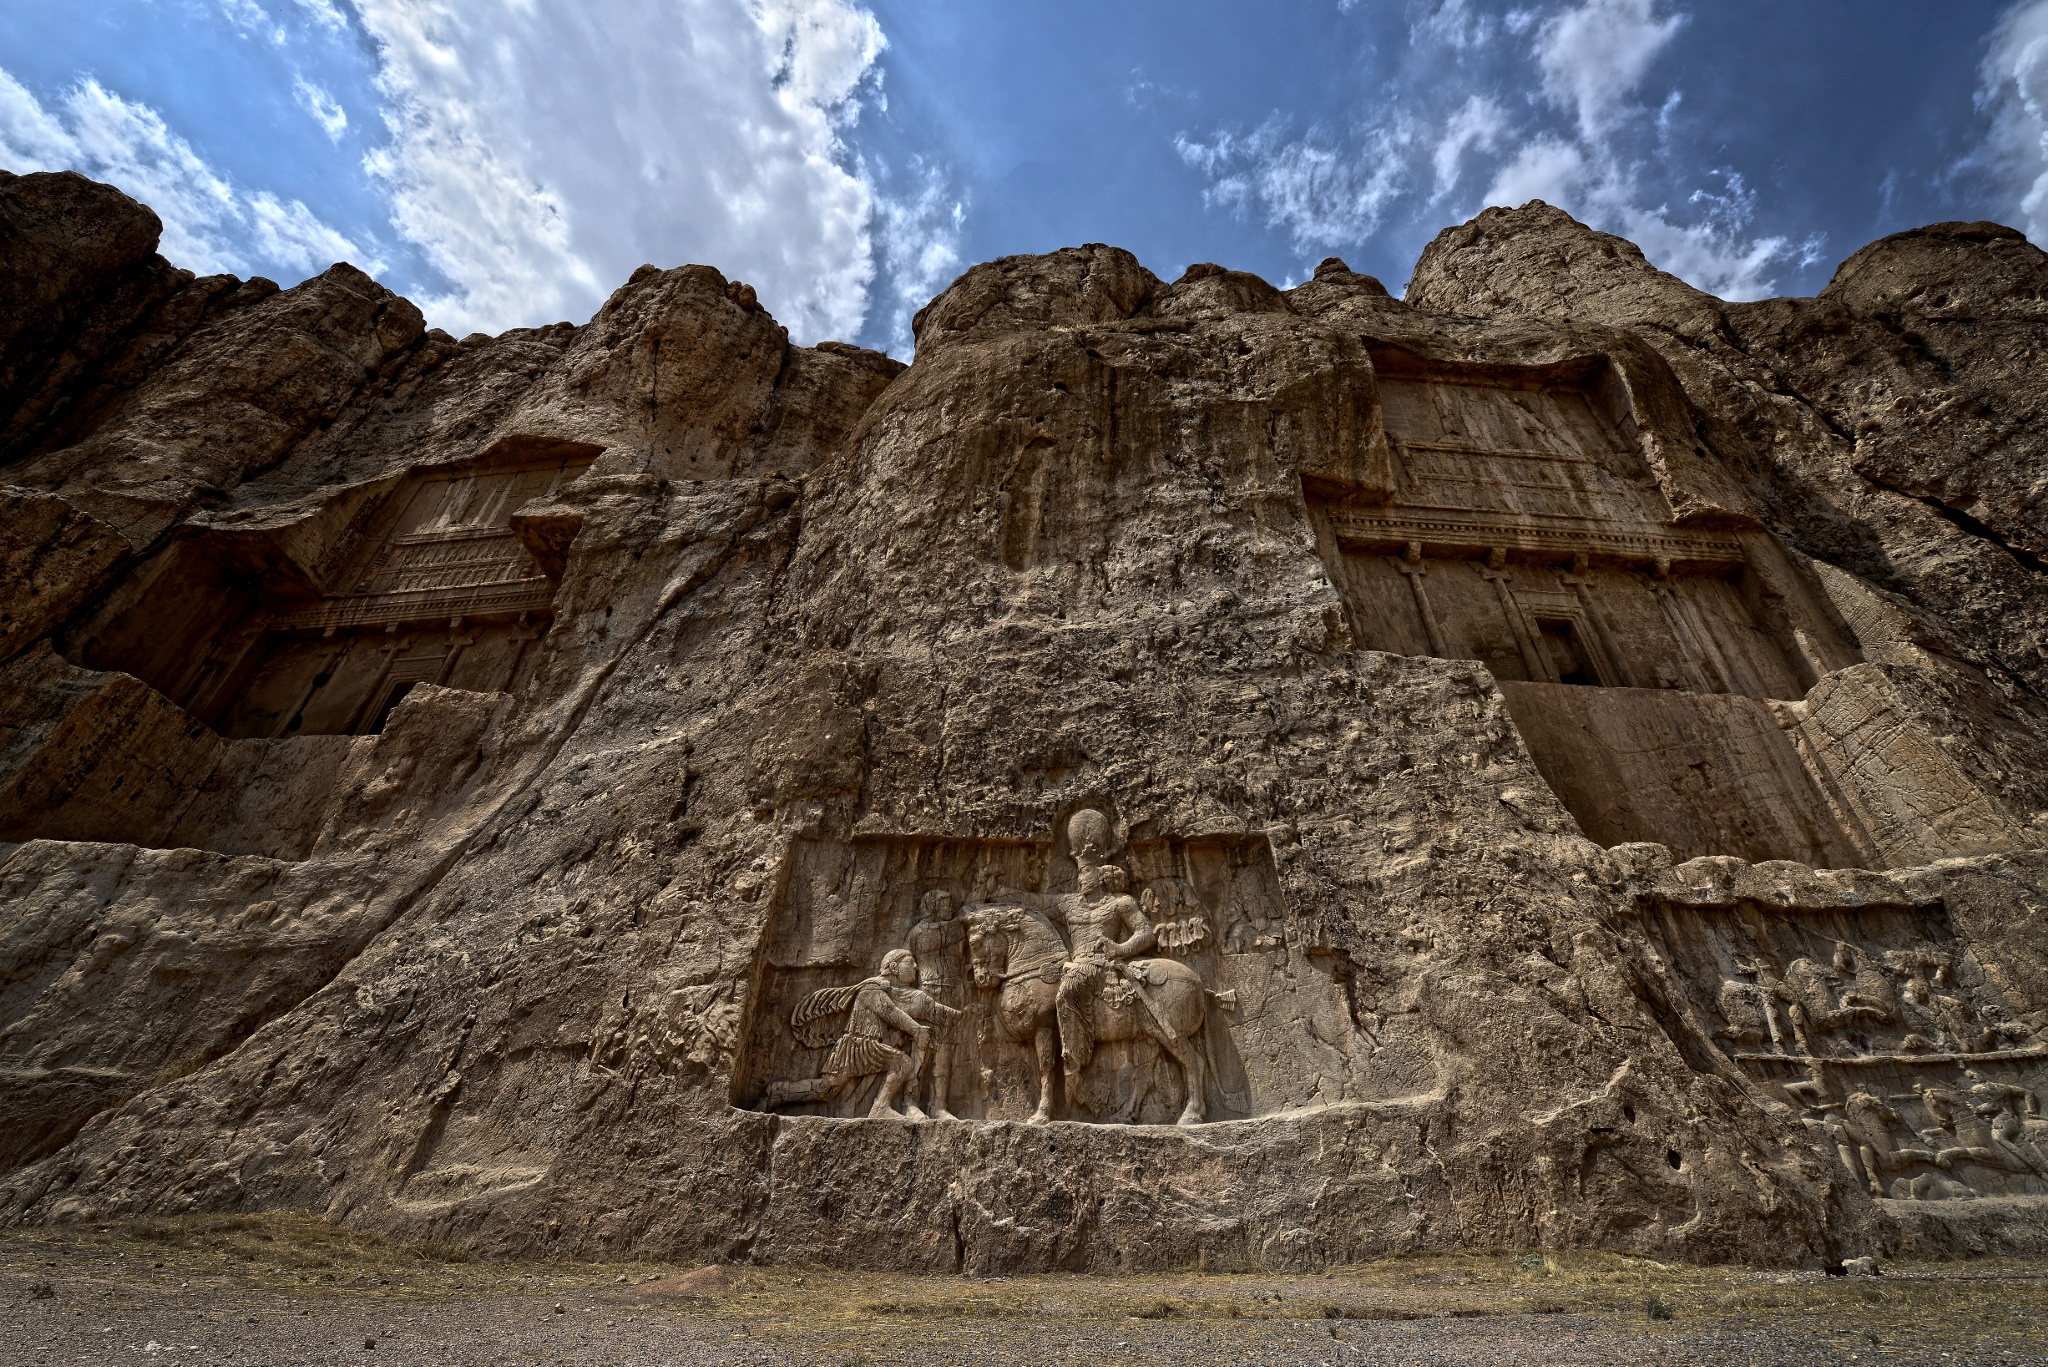 General 2048x1367 Iran history rocks outdoors landmark Asia Naqsh-e Rostam king Shapur I Emperor Valerian